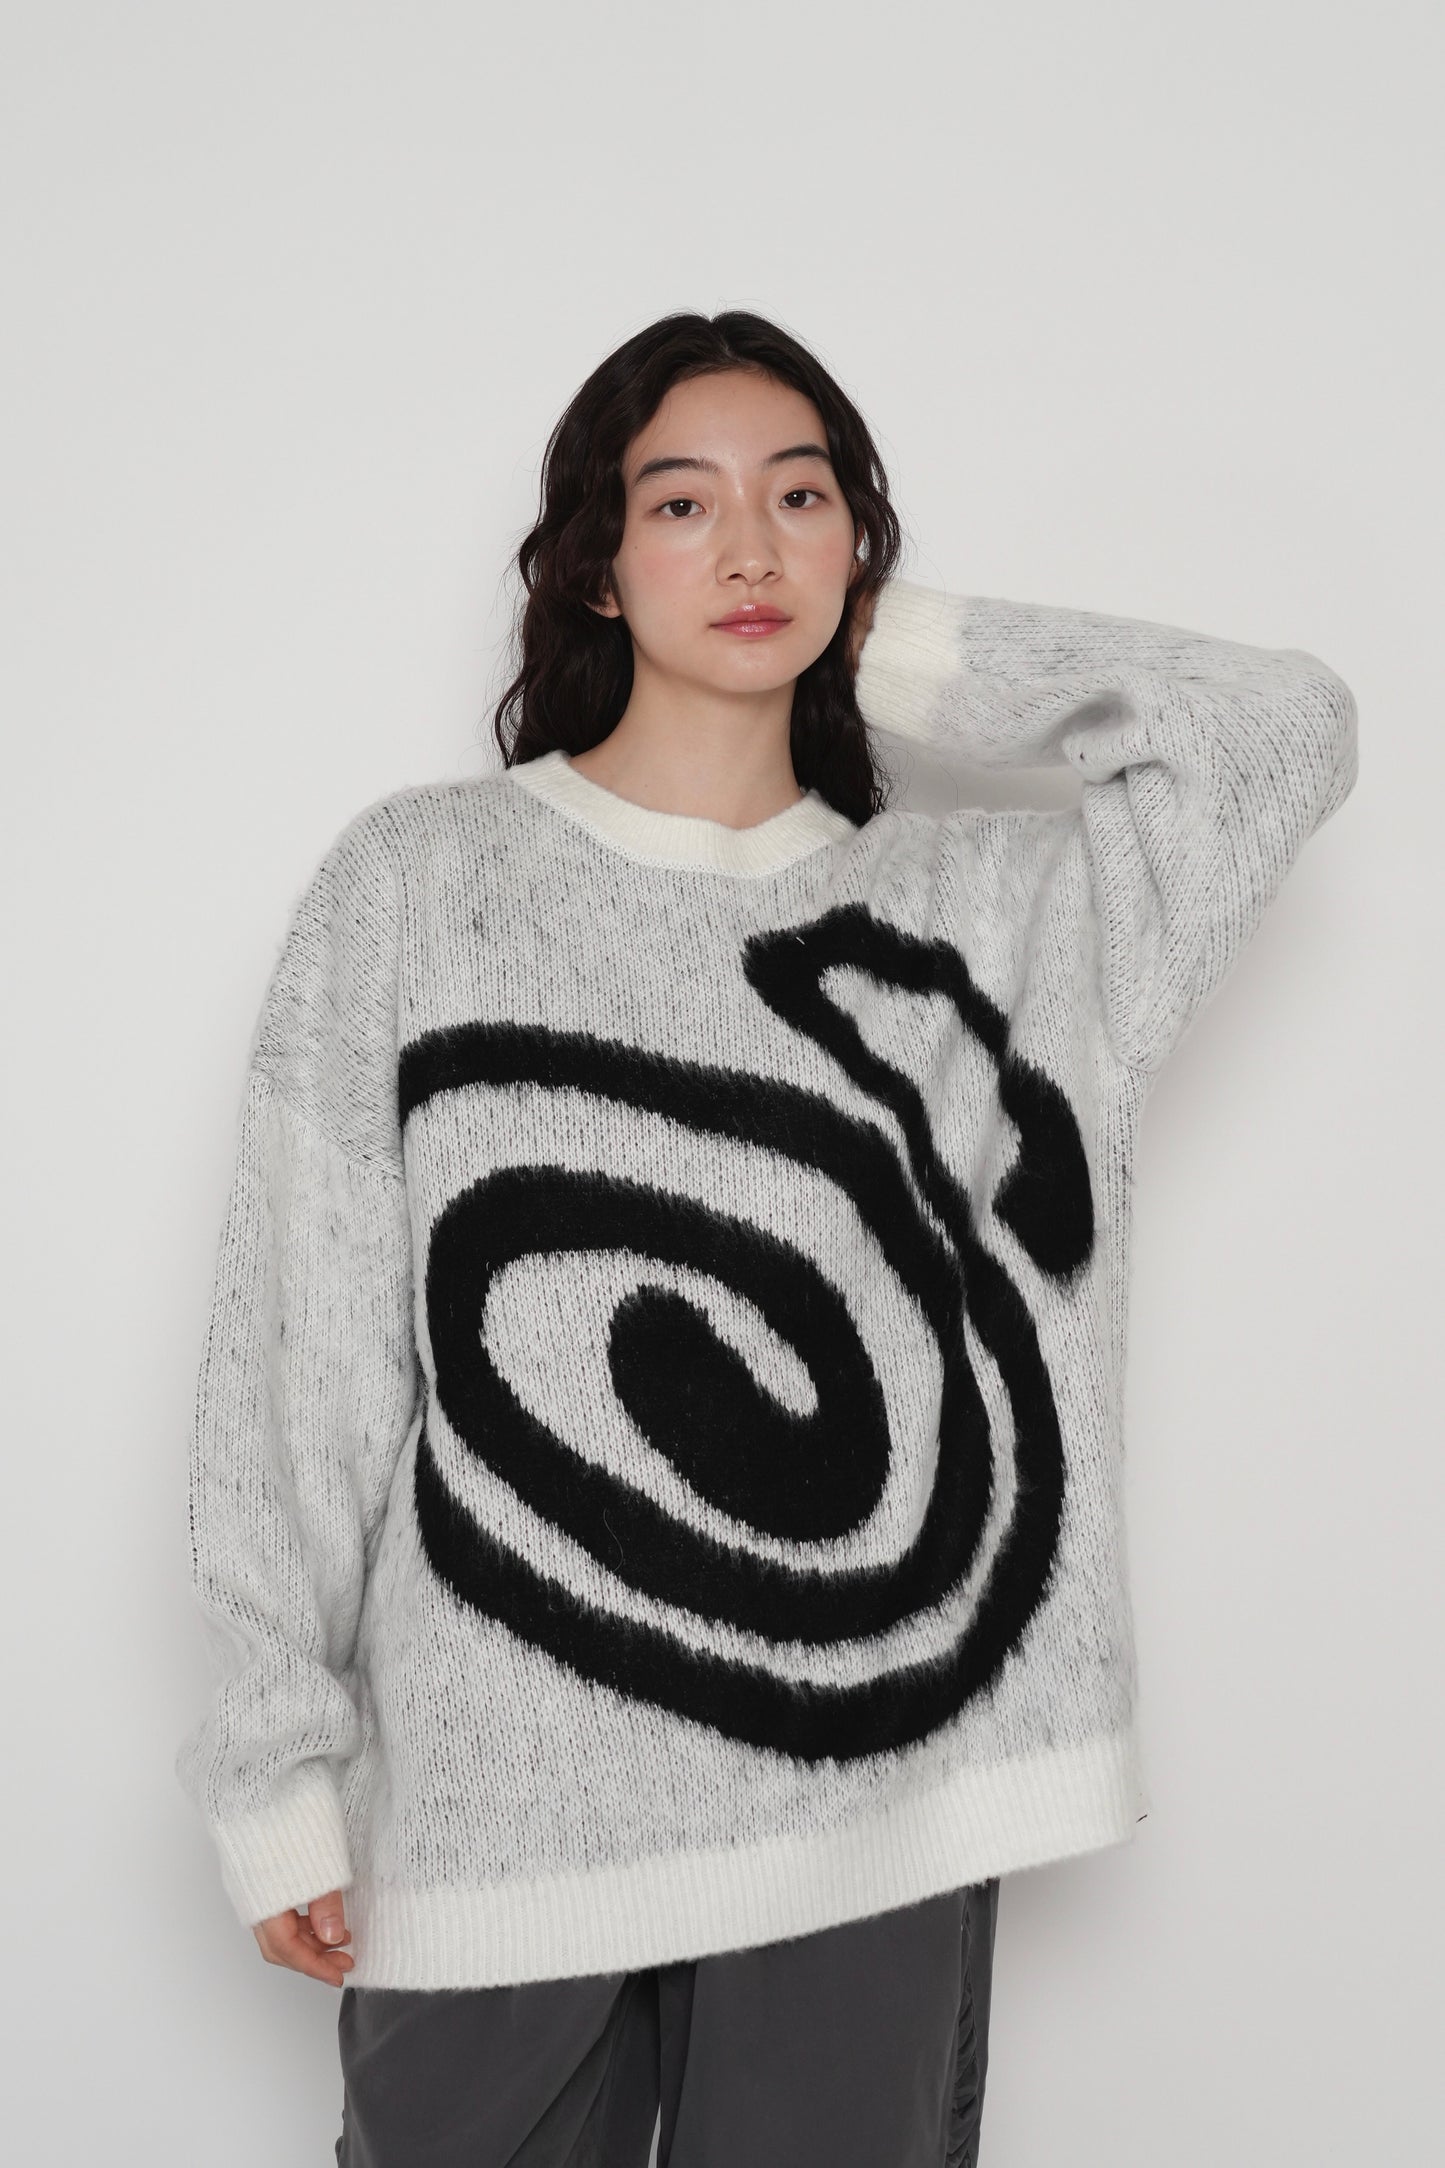 swirl knit